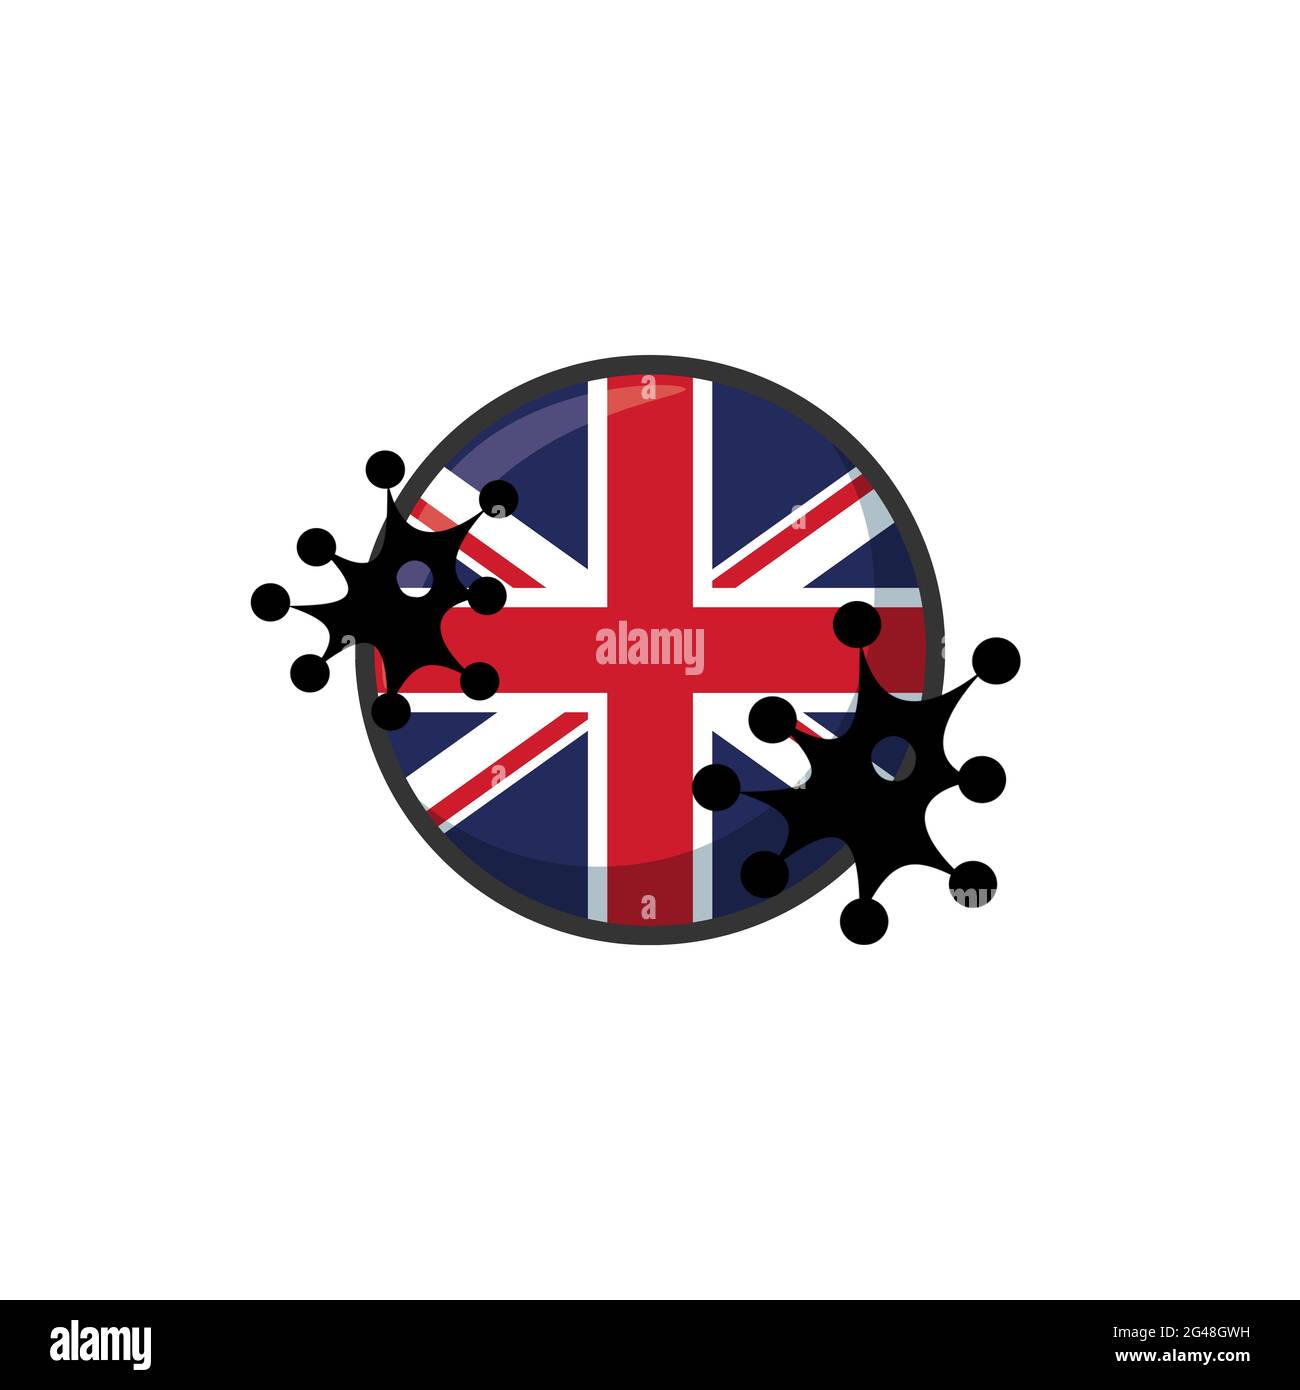 Royaume-Uni frappé par le coronavirus. Covid-19 impact national. Attaque de virus sur le drapeau du Royaume-Uni illustration du concept sur fond blanc Banque D'Images